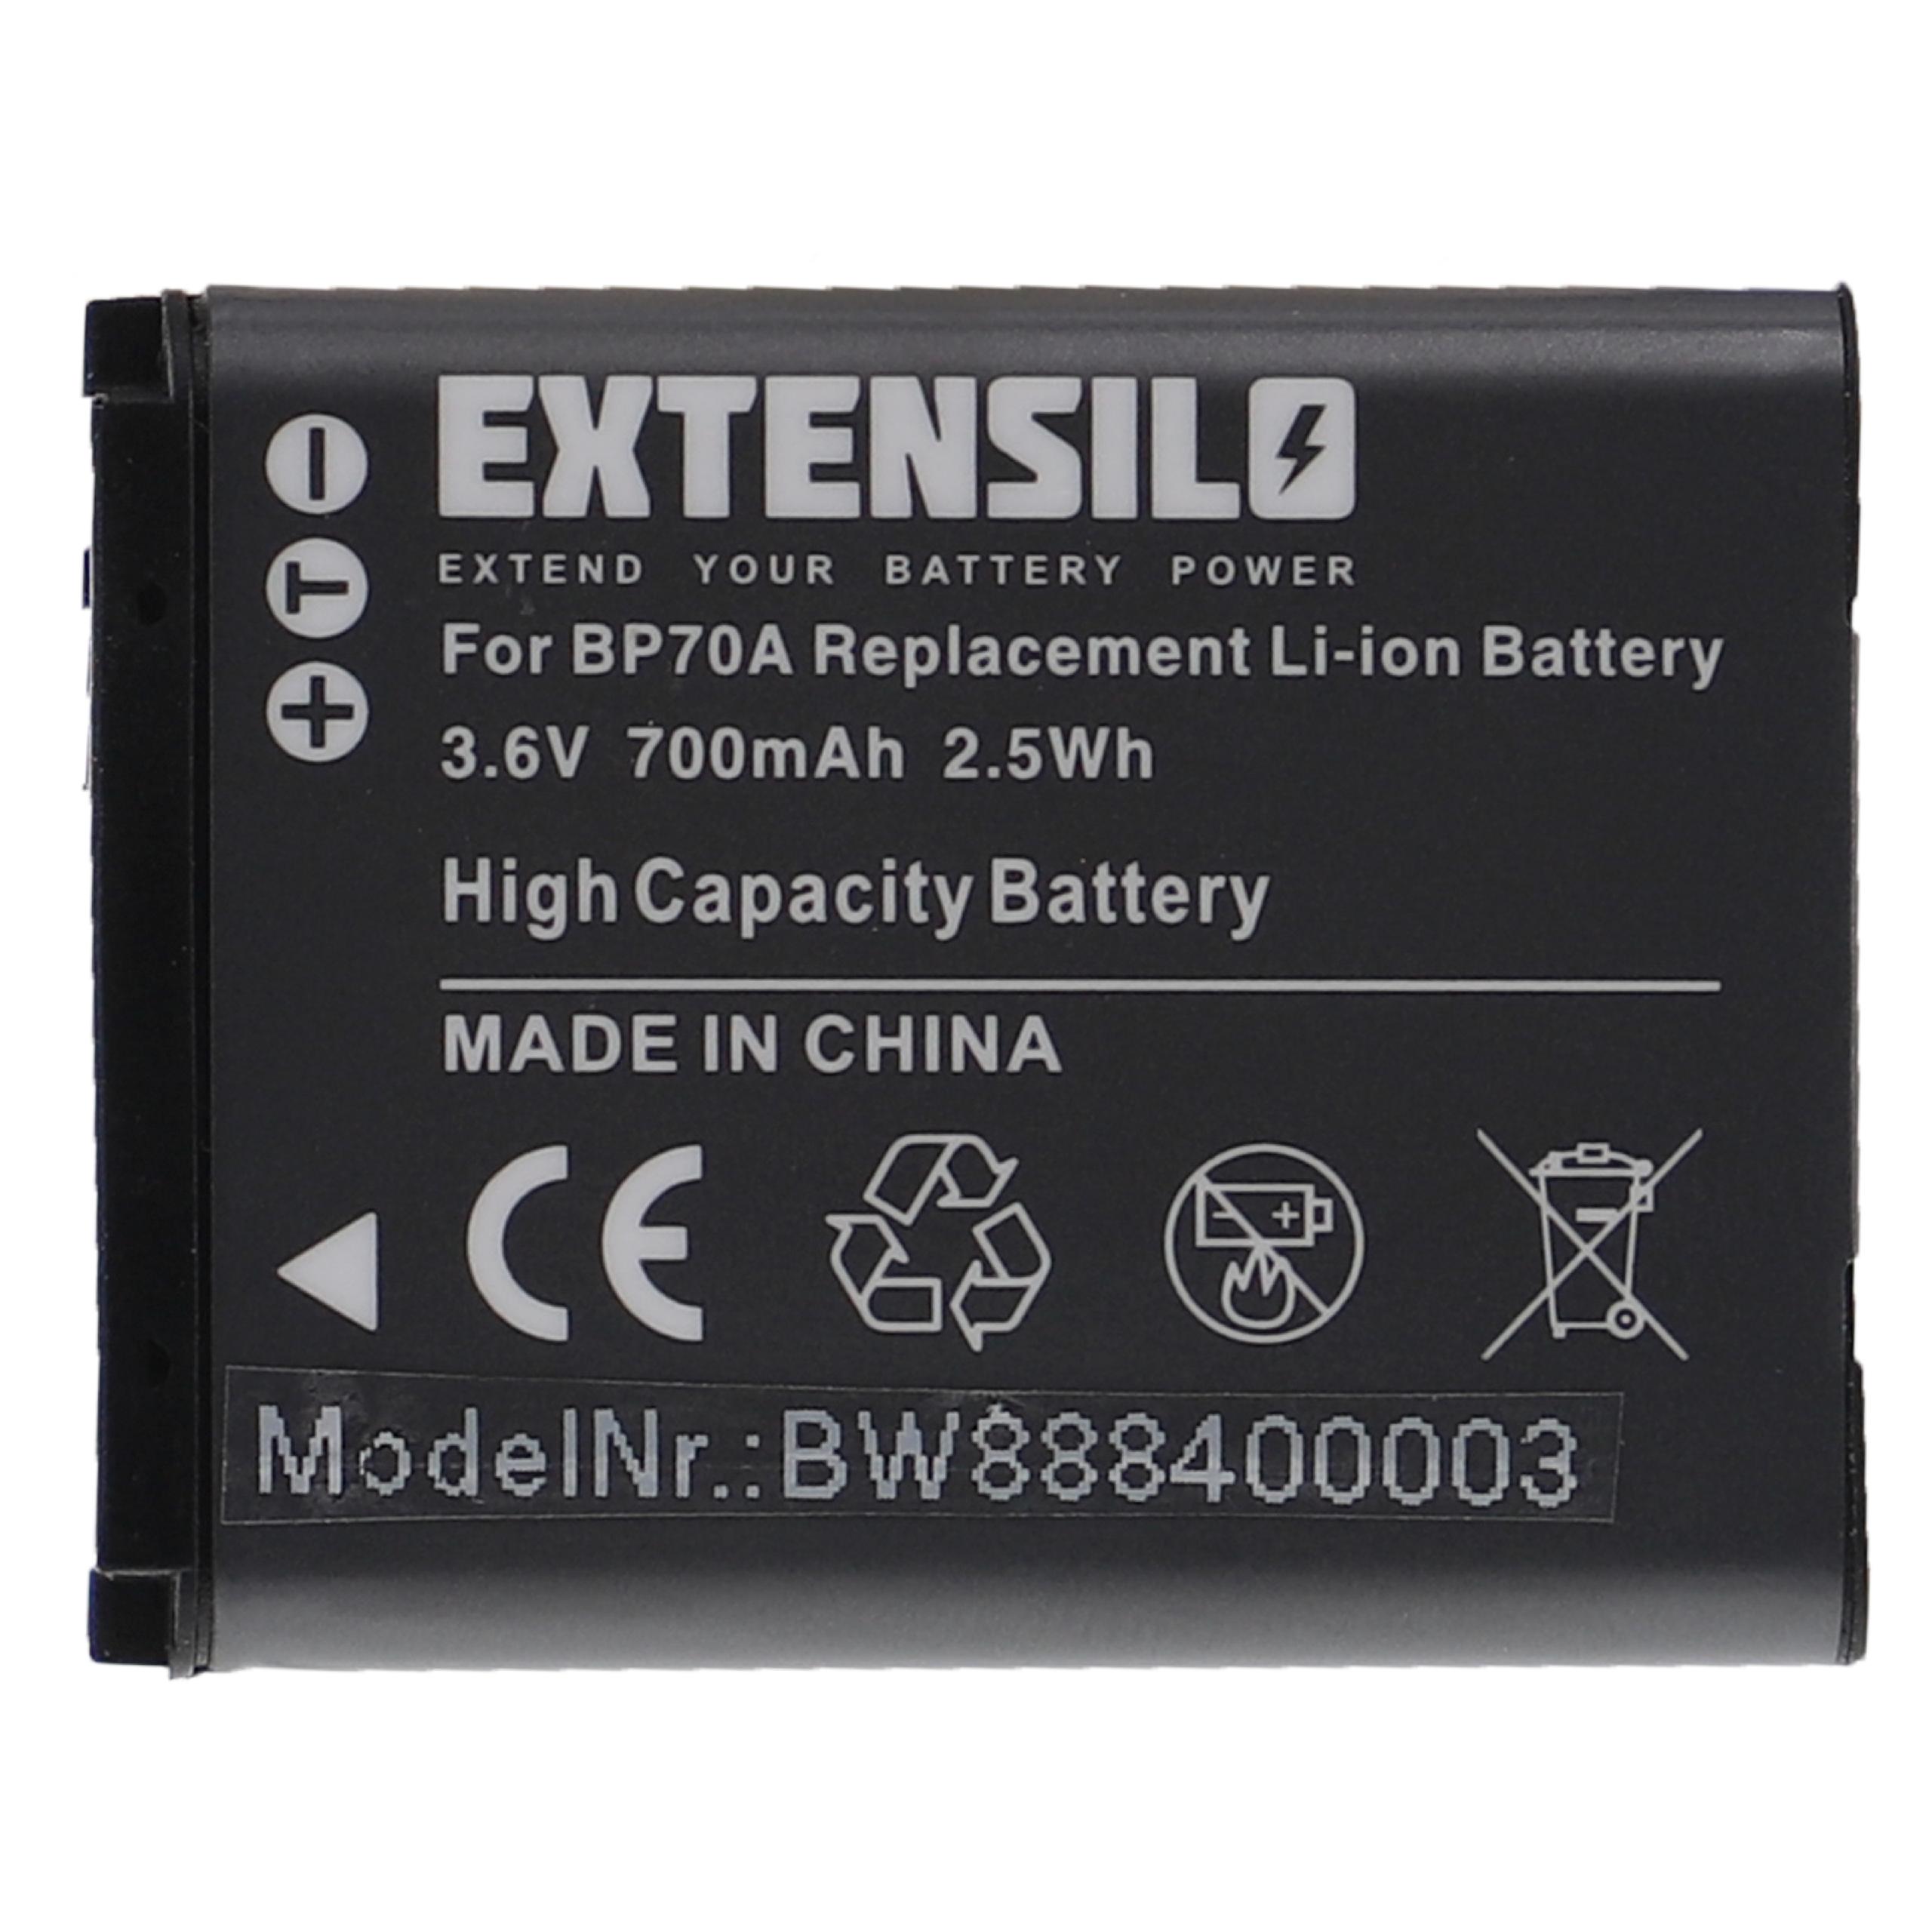 Batteria sostituisce Samsung BP-70a, SLB-70A, BP70a, EA-BP70A per fotocamera Samsung - 700mAh 3,6V Li-Ion